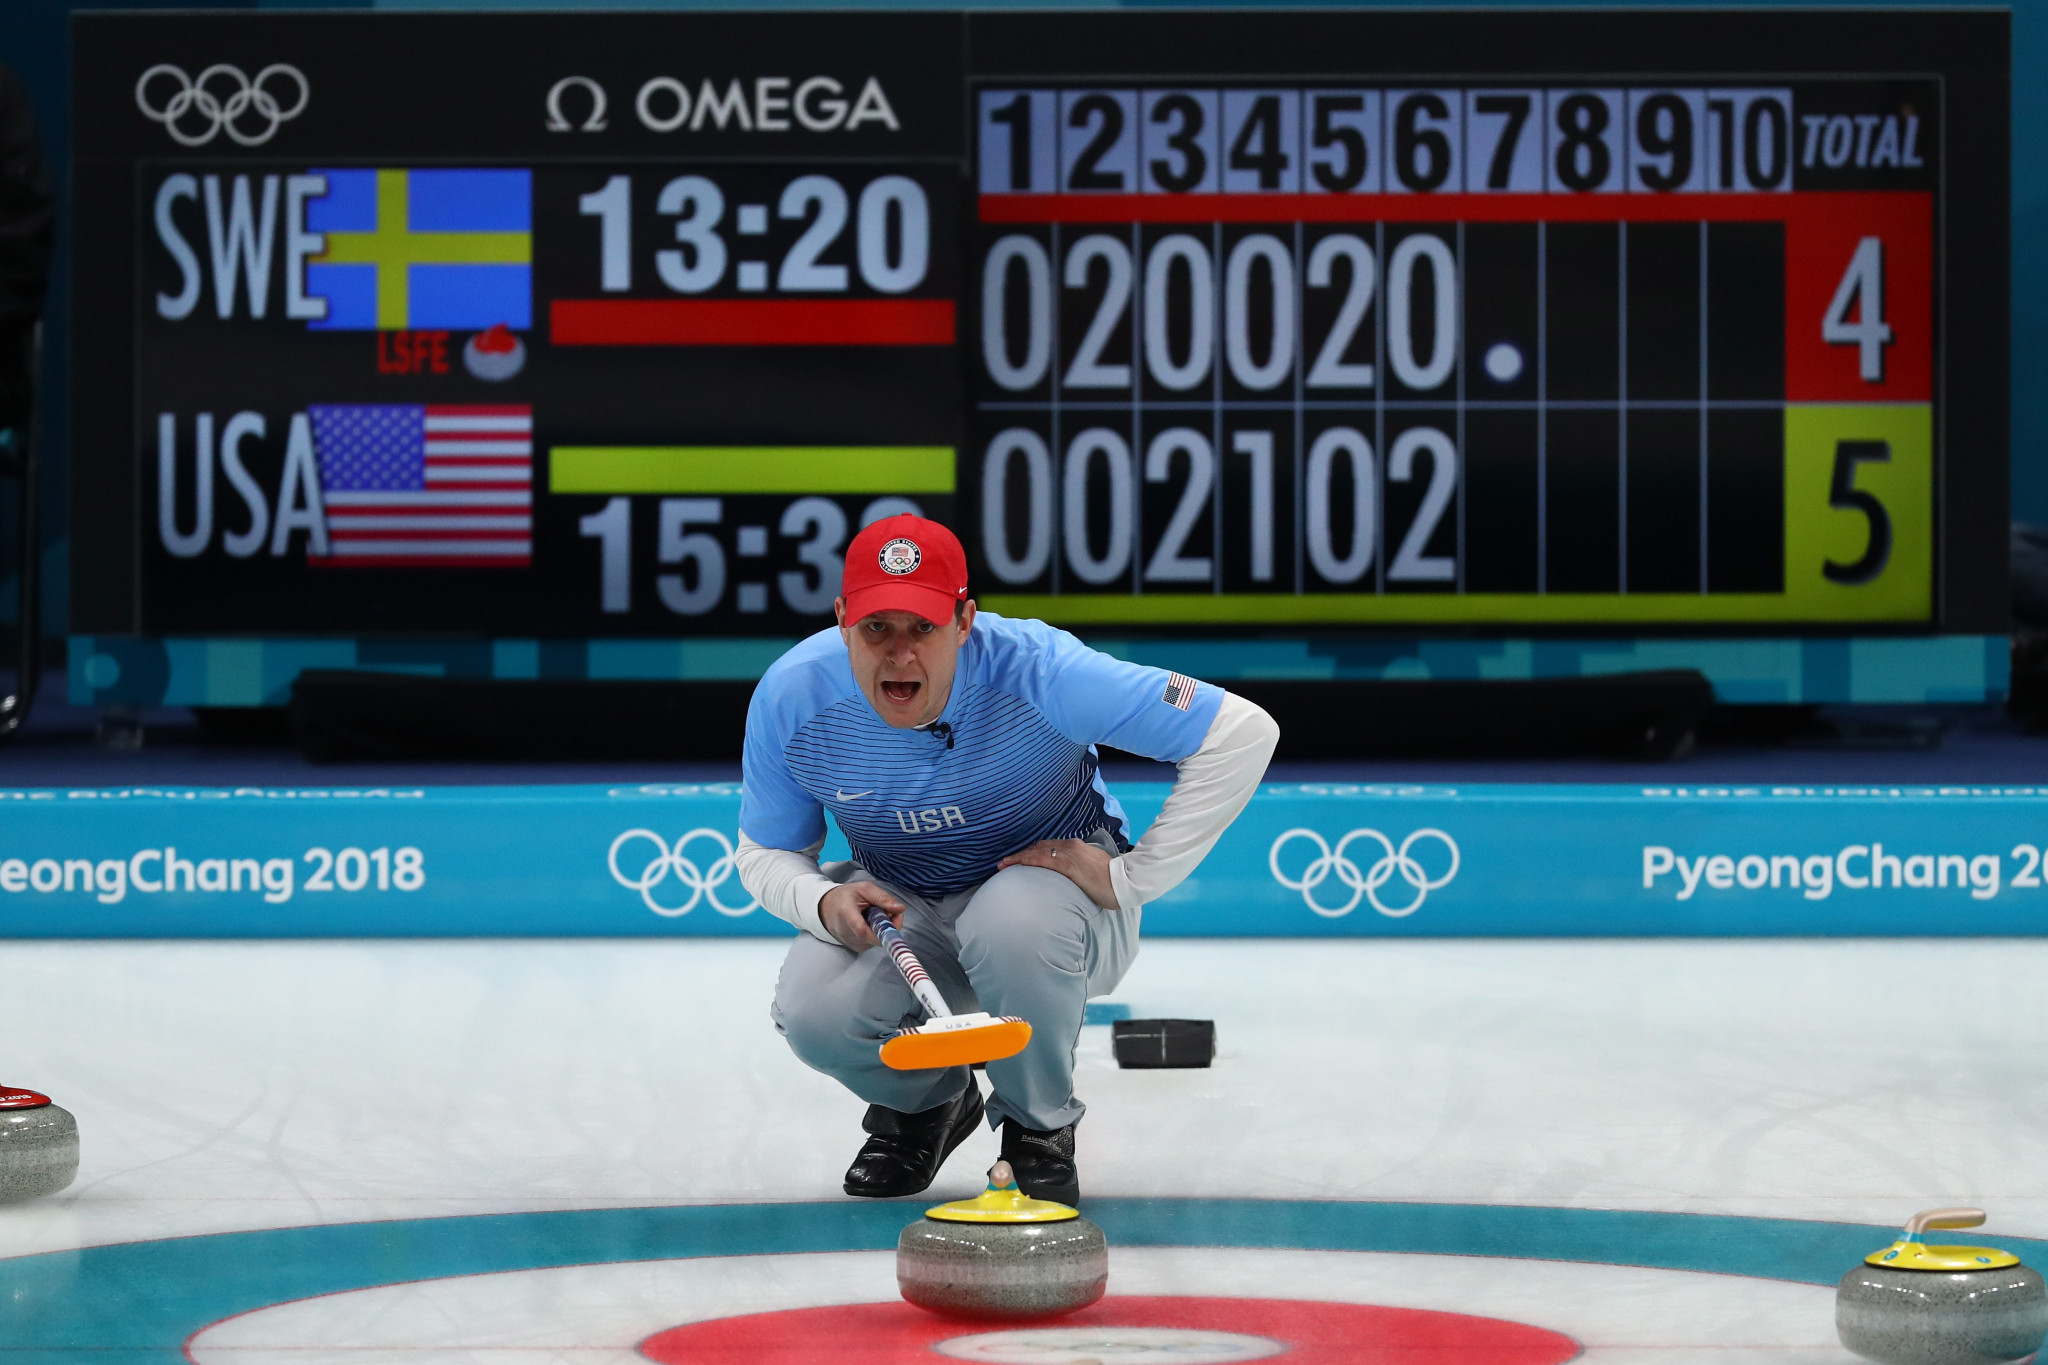 Team Shuster won Olympic gold at Pyeongchang 2018 ©USA Curling